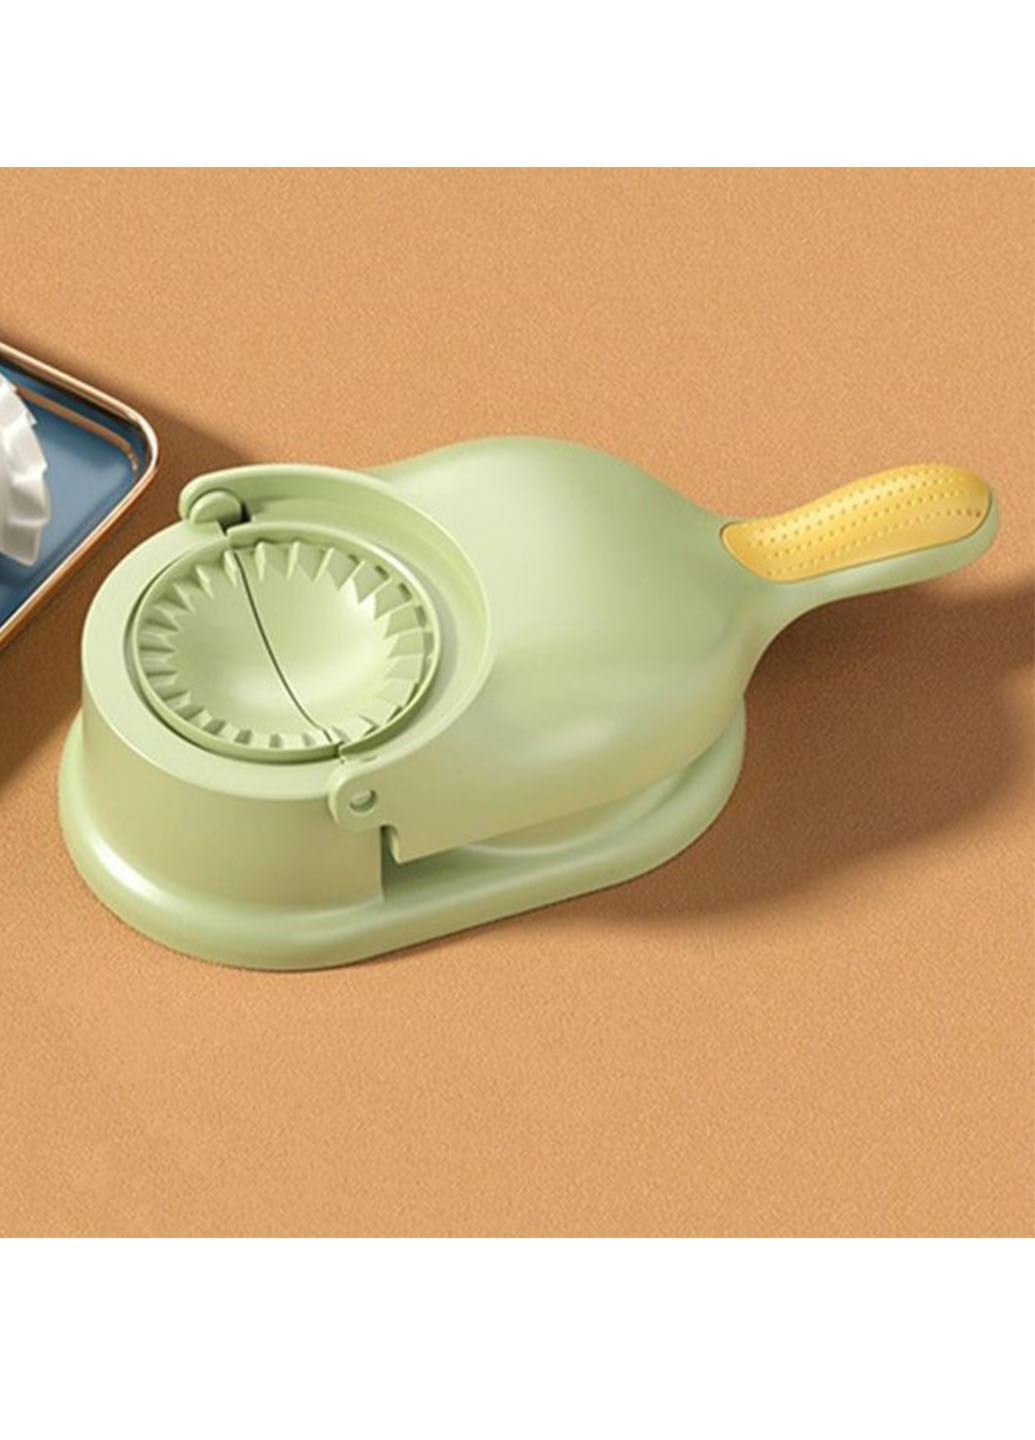 Ручная машинка-аппарат Dumpling Mold 2в1 для раскачки теста и автоматической лепки вареников и пельменей Good Idea (270000300)